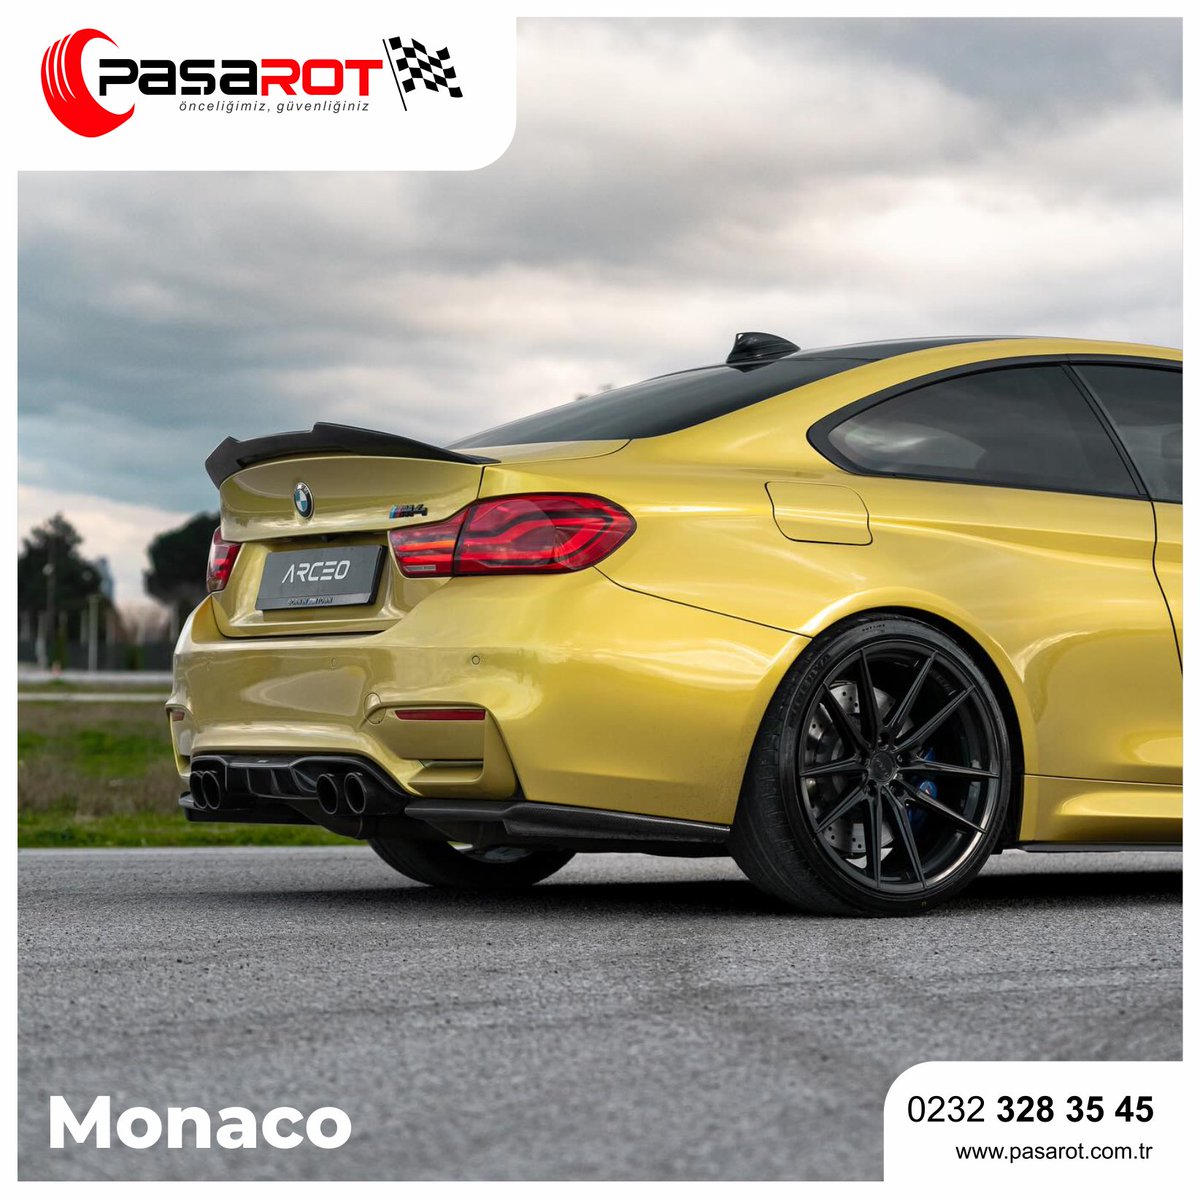 BMW M4'ü diğerlerinden öne çıkaran bir dokunuş: Monaco!

#PaşaRot #ArceoWheels #ArceoMonaco